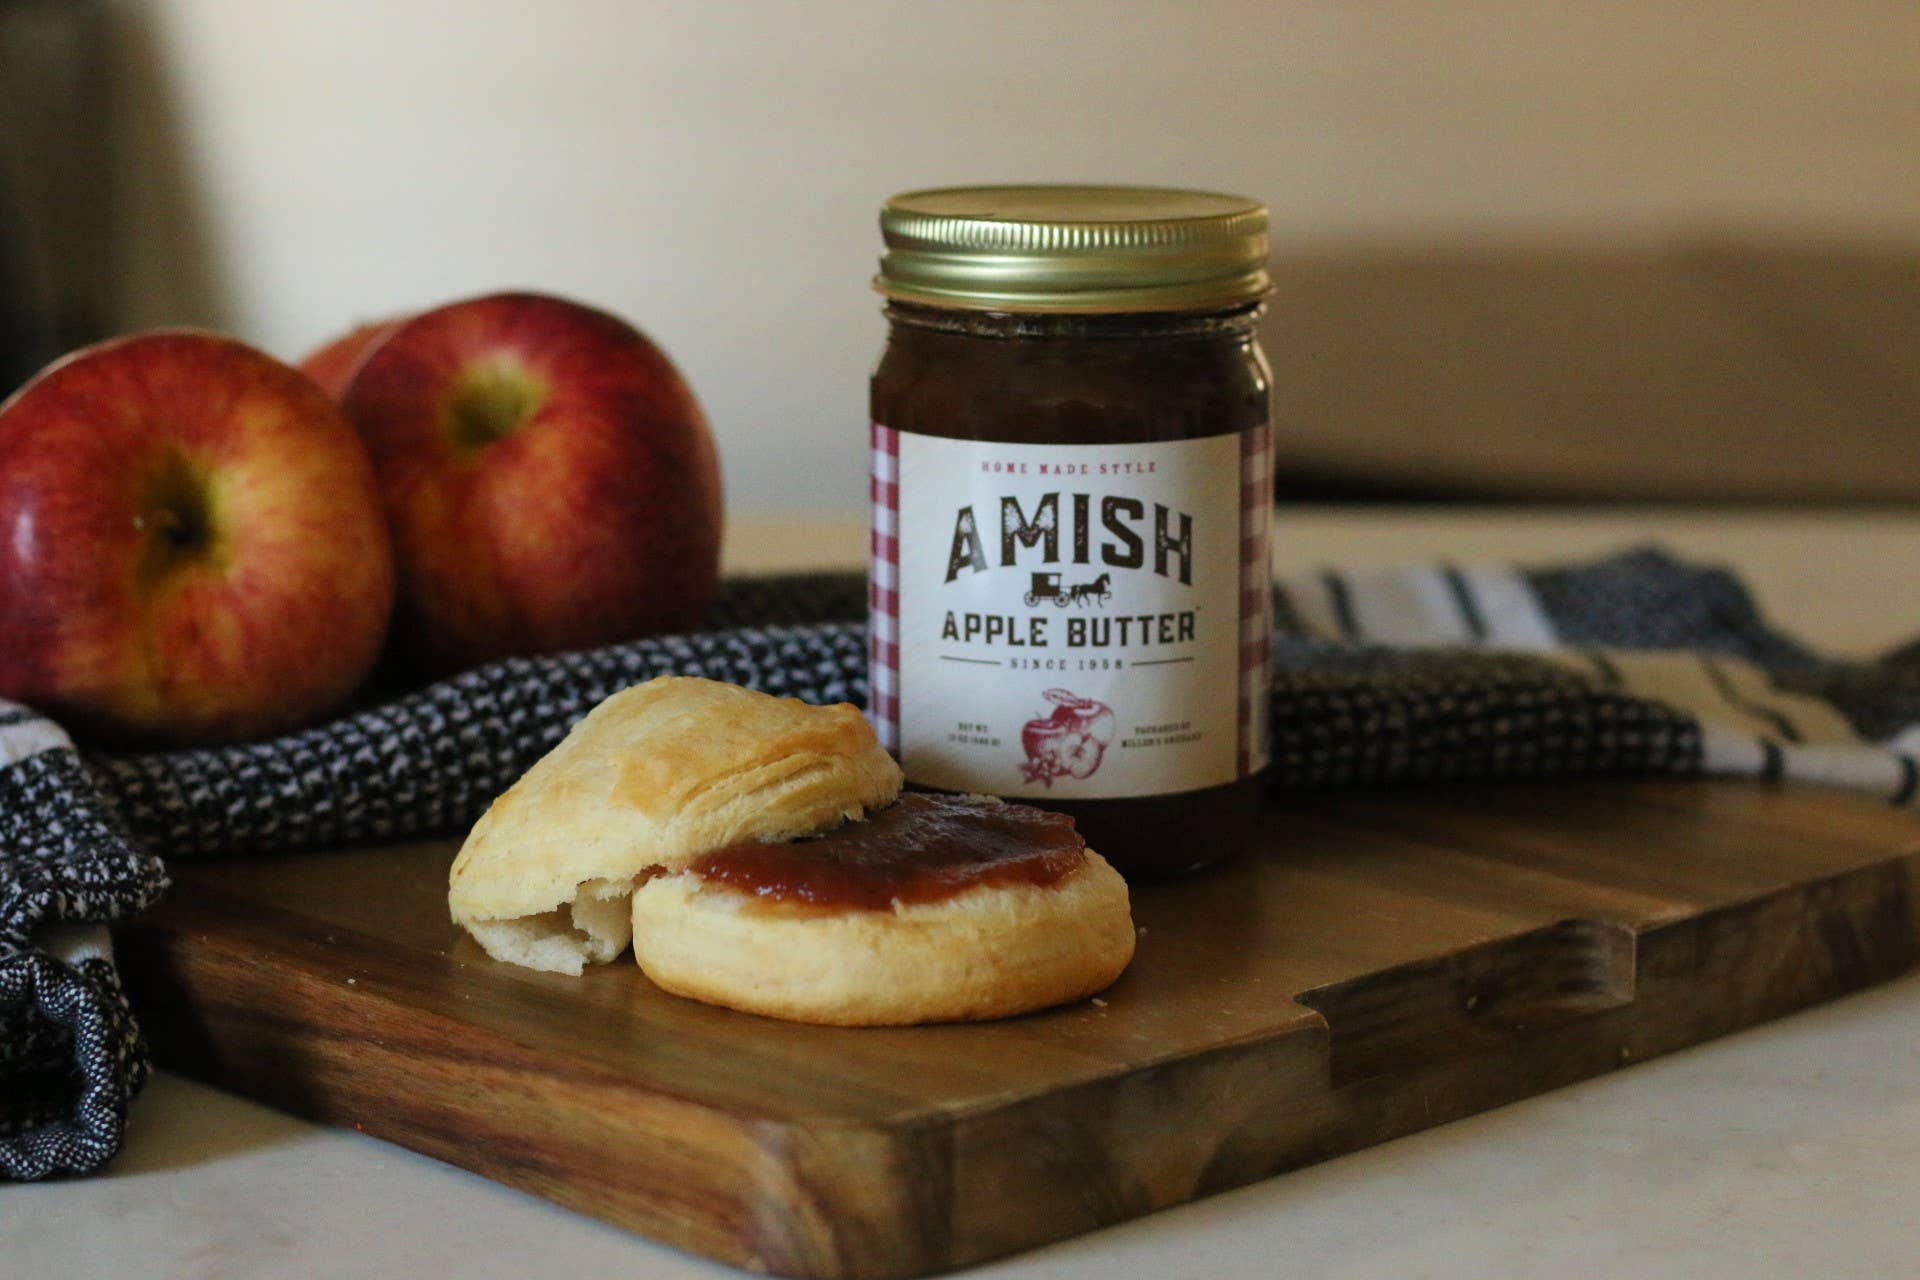 SALE! Amish Apple Butter - Regular (12 oz jar)